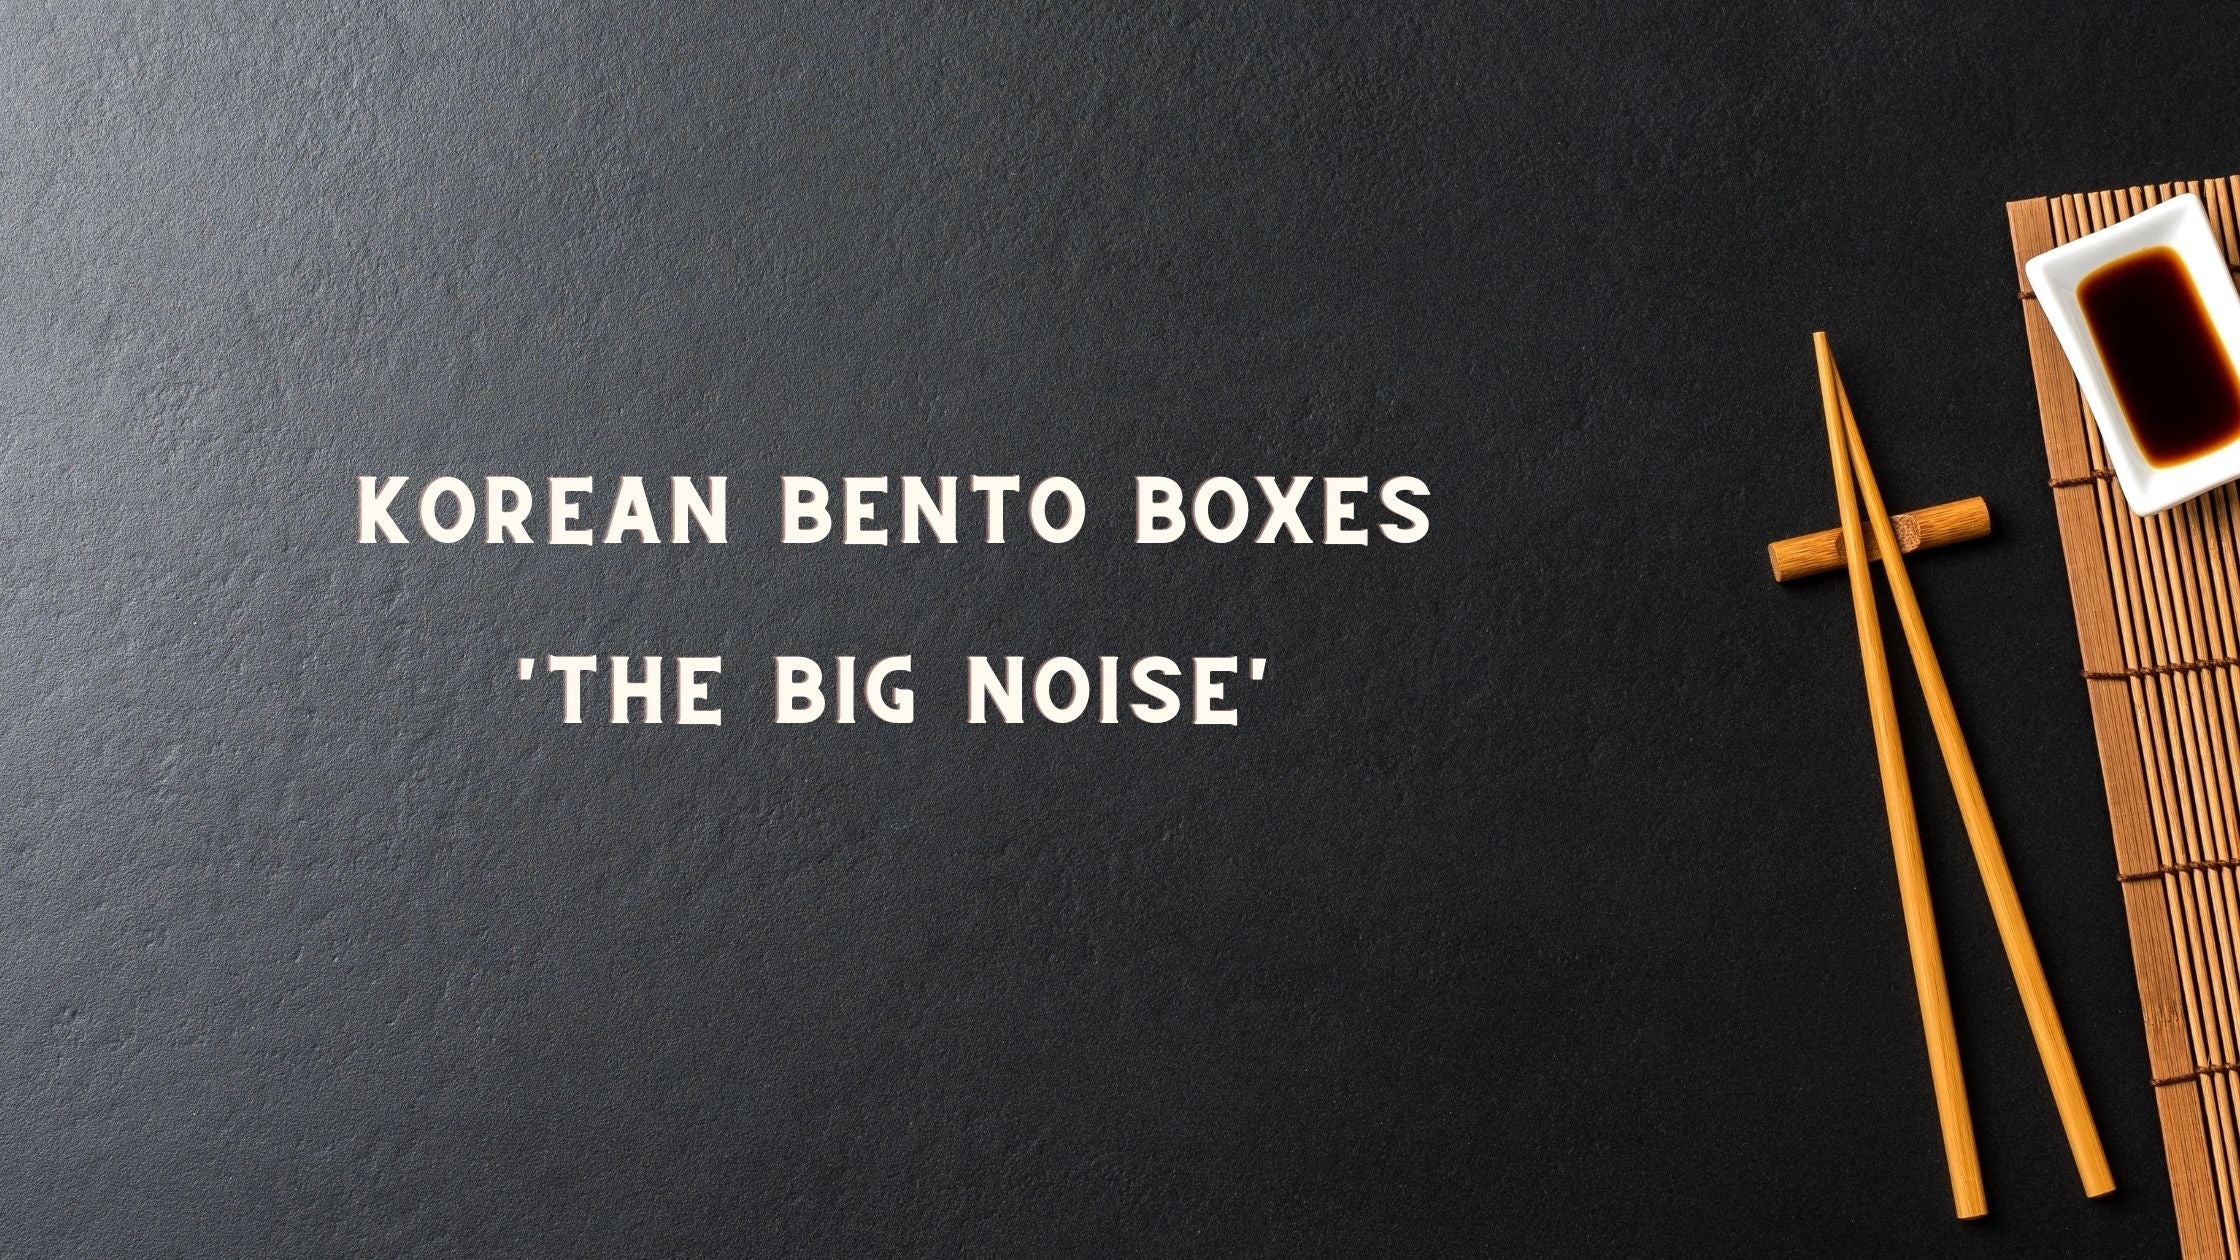 Korean Bento Boxes - The Big Noise!